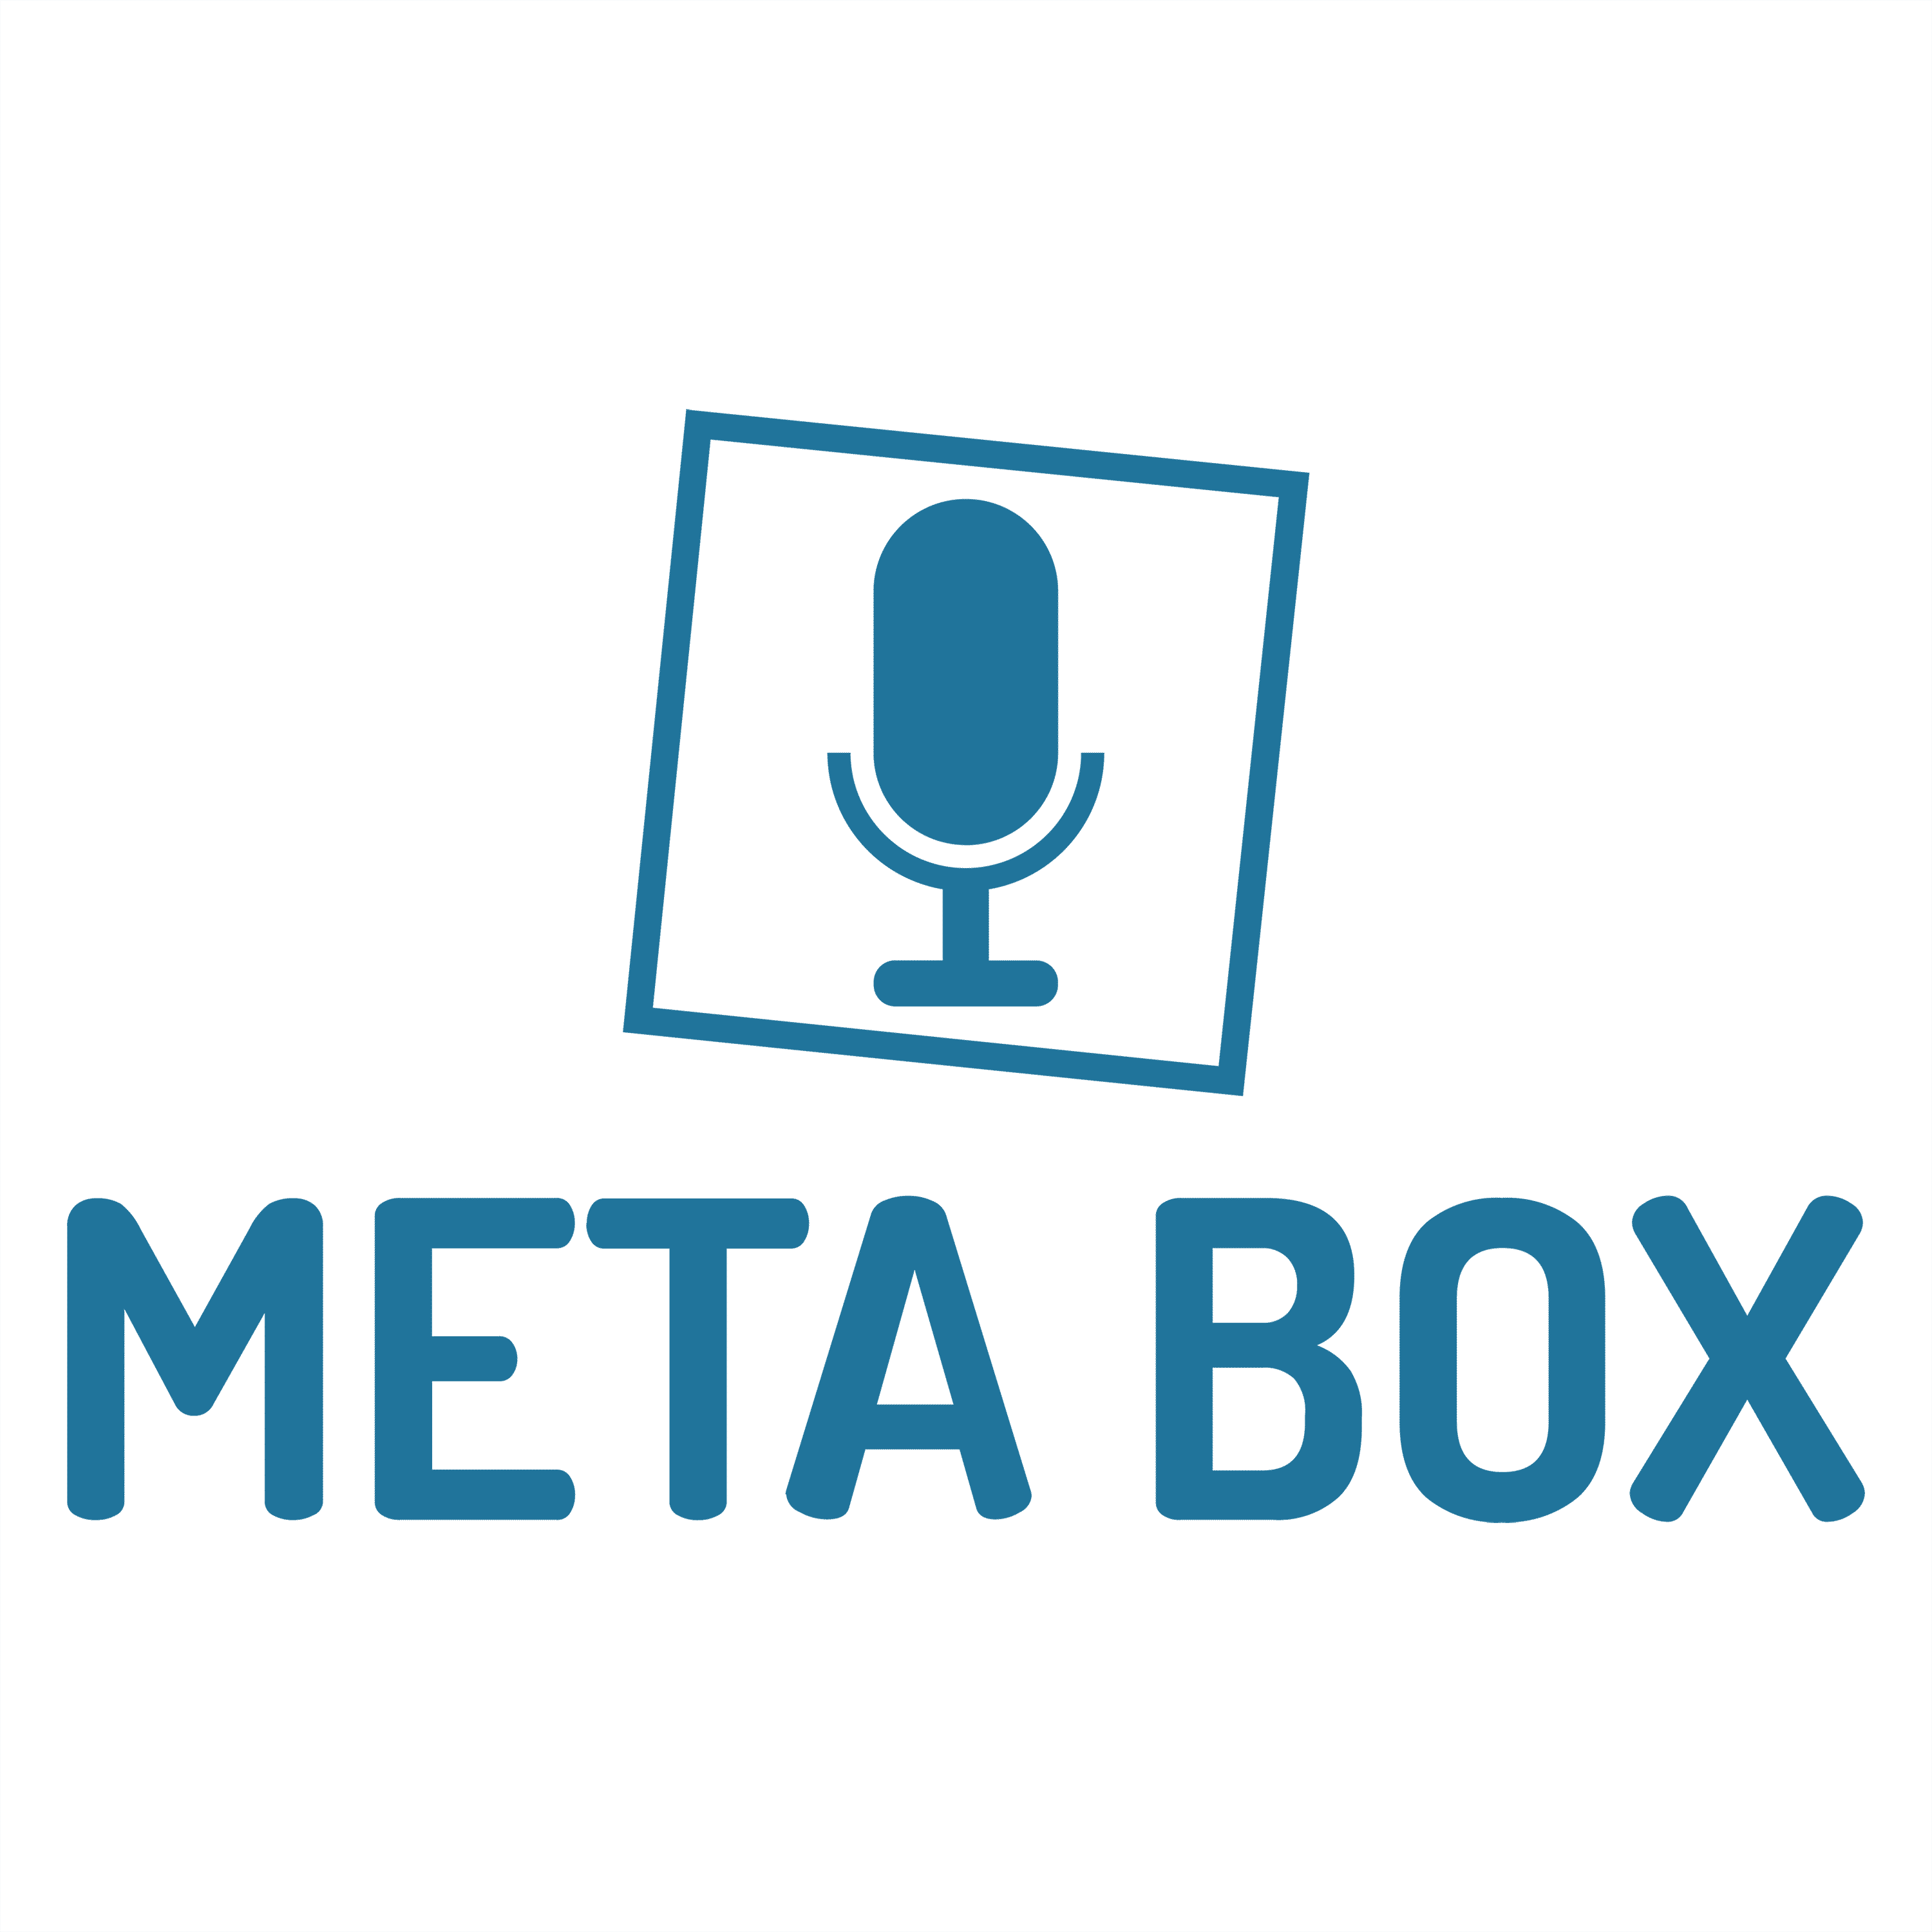 MetaBox